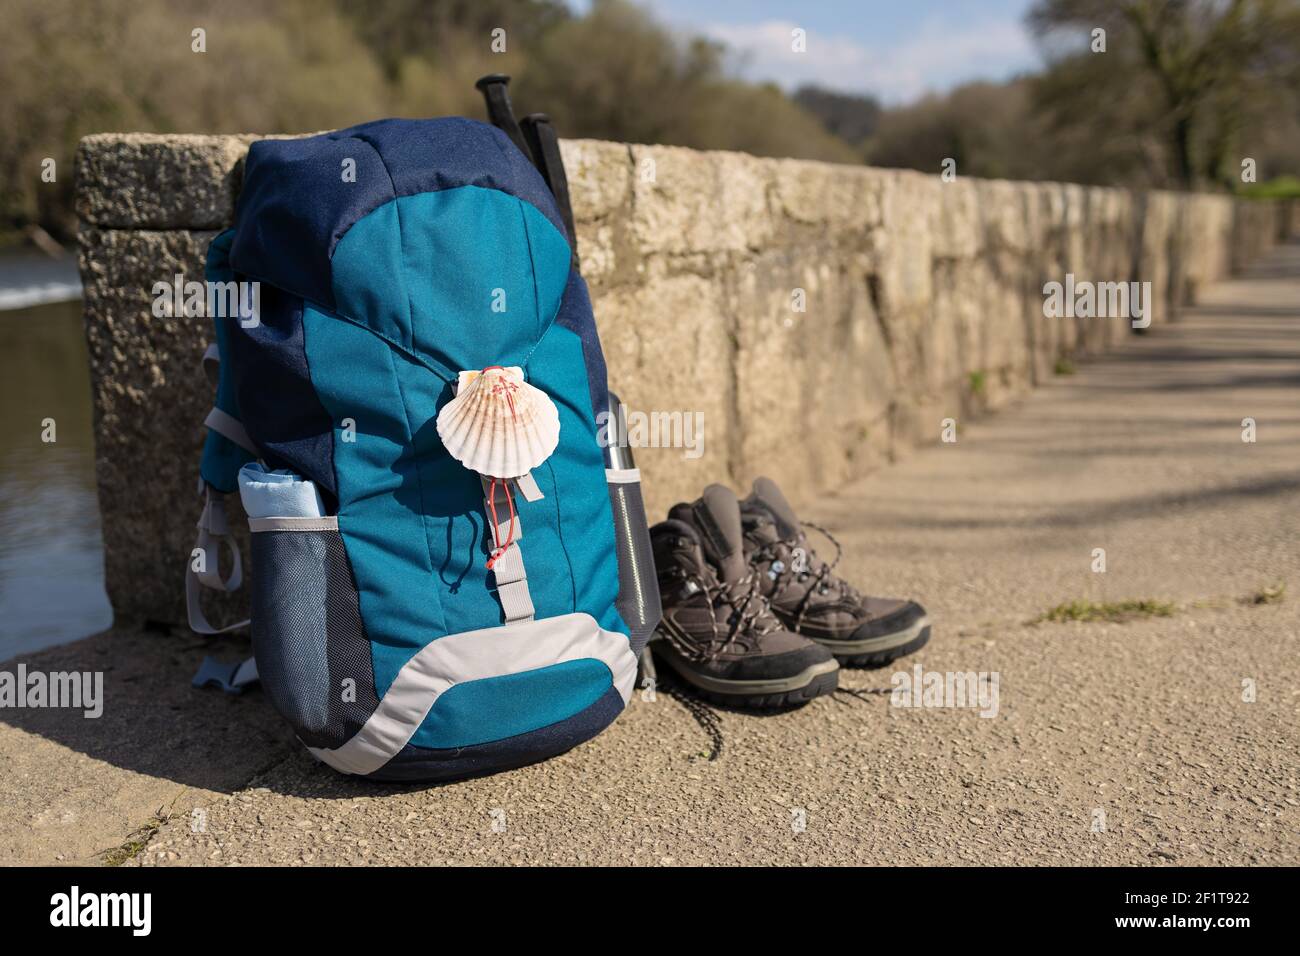 Sac à dos avec le symbole de la mer de Camino de Santiago, bottes de  trekking et poteaux pendu sur le mur de pierre. Pèlerinage à  Saint-Jacques-de-Compostelle. Copier l'espace Photo Stock -